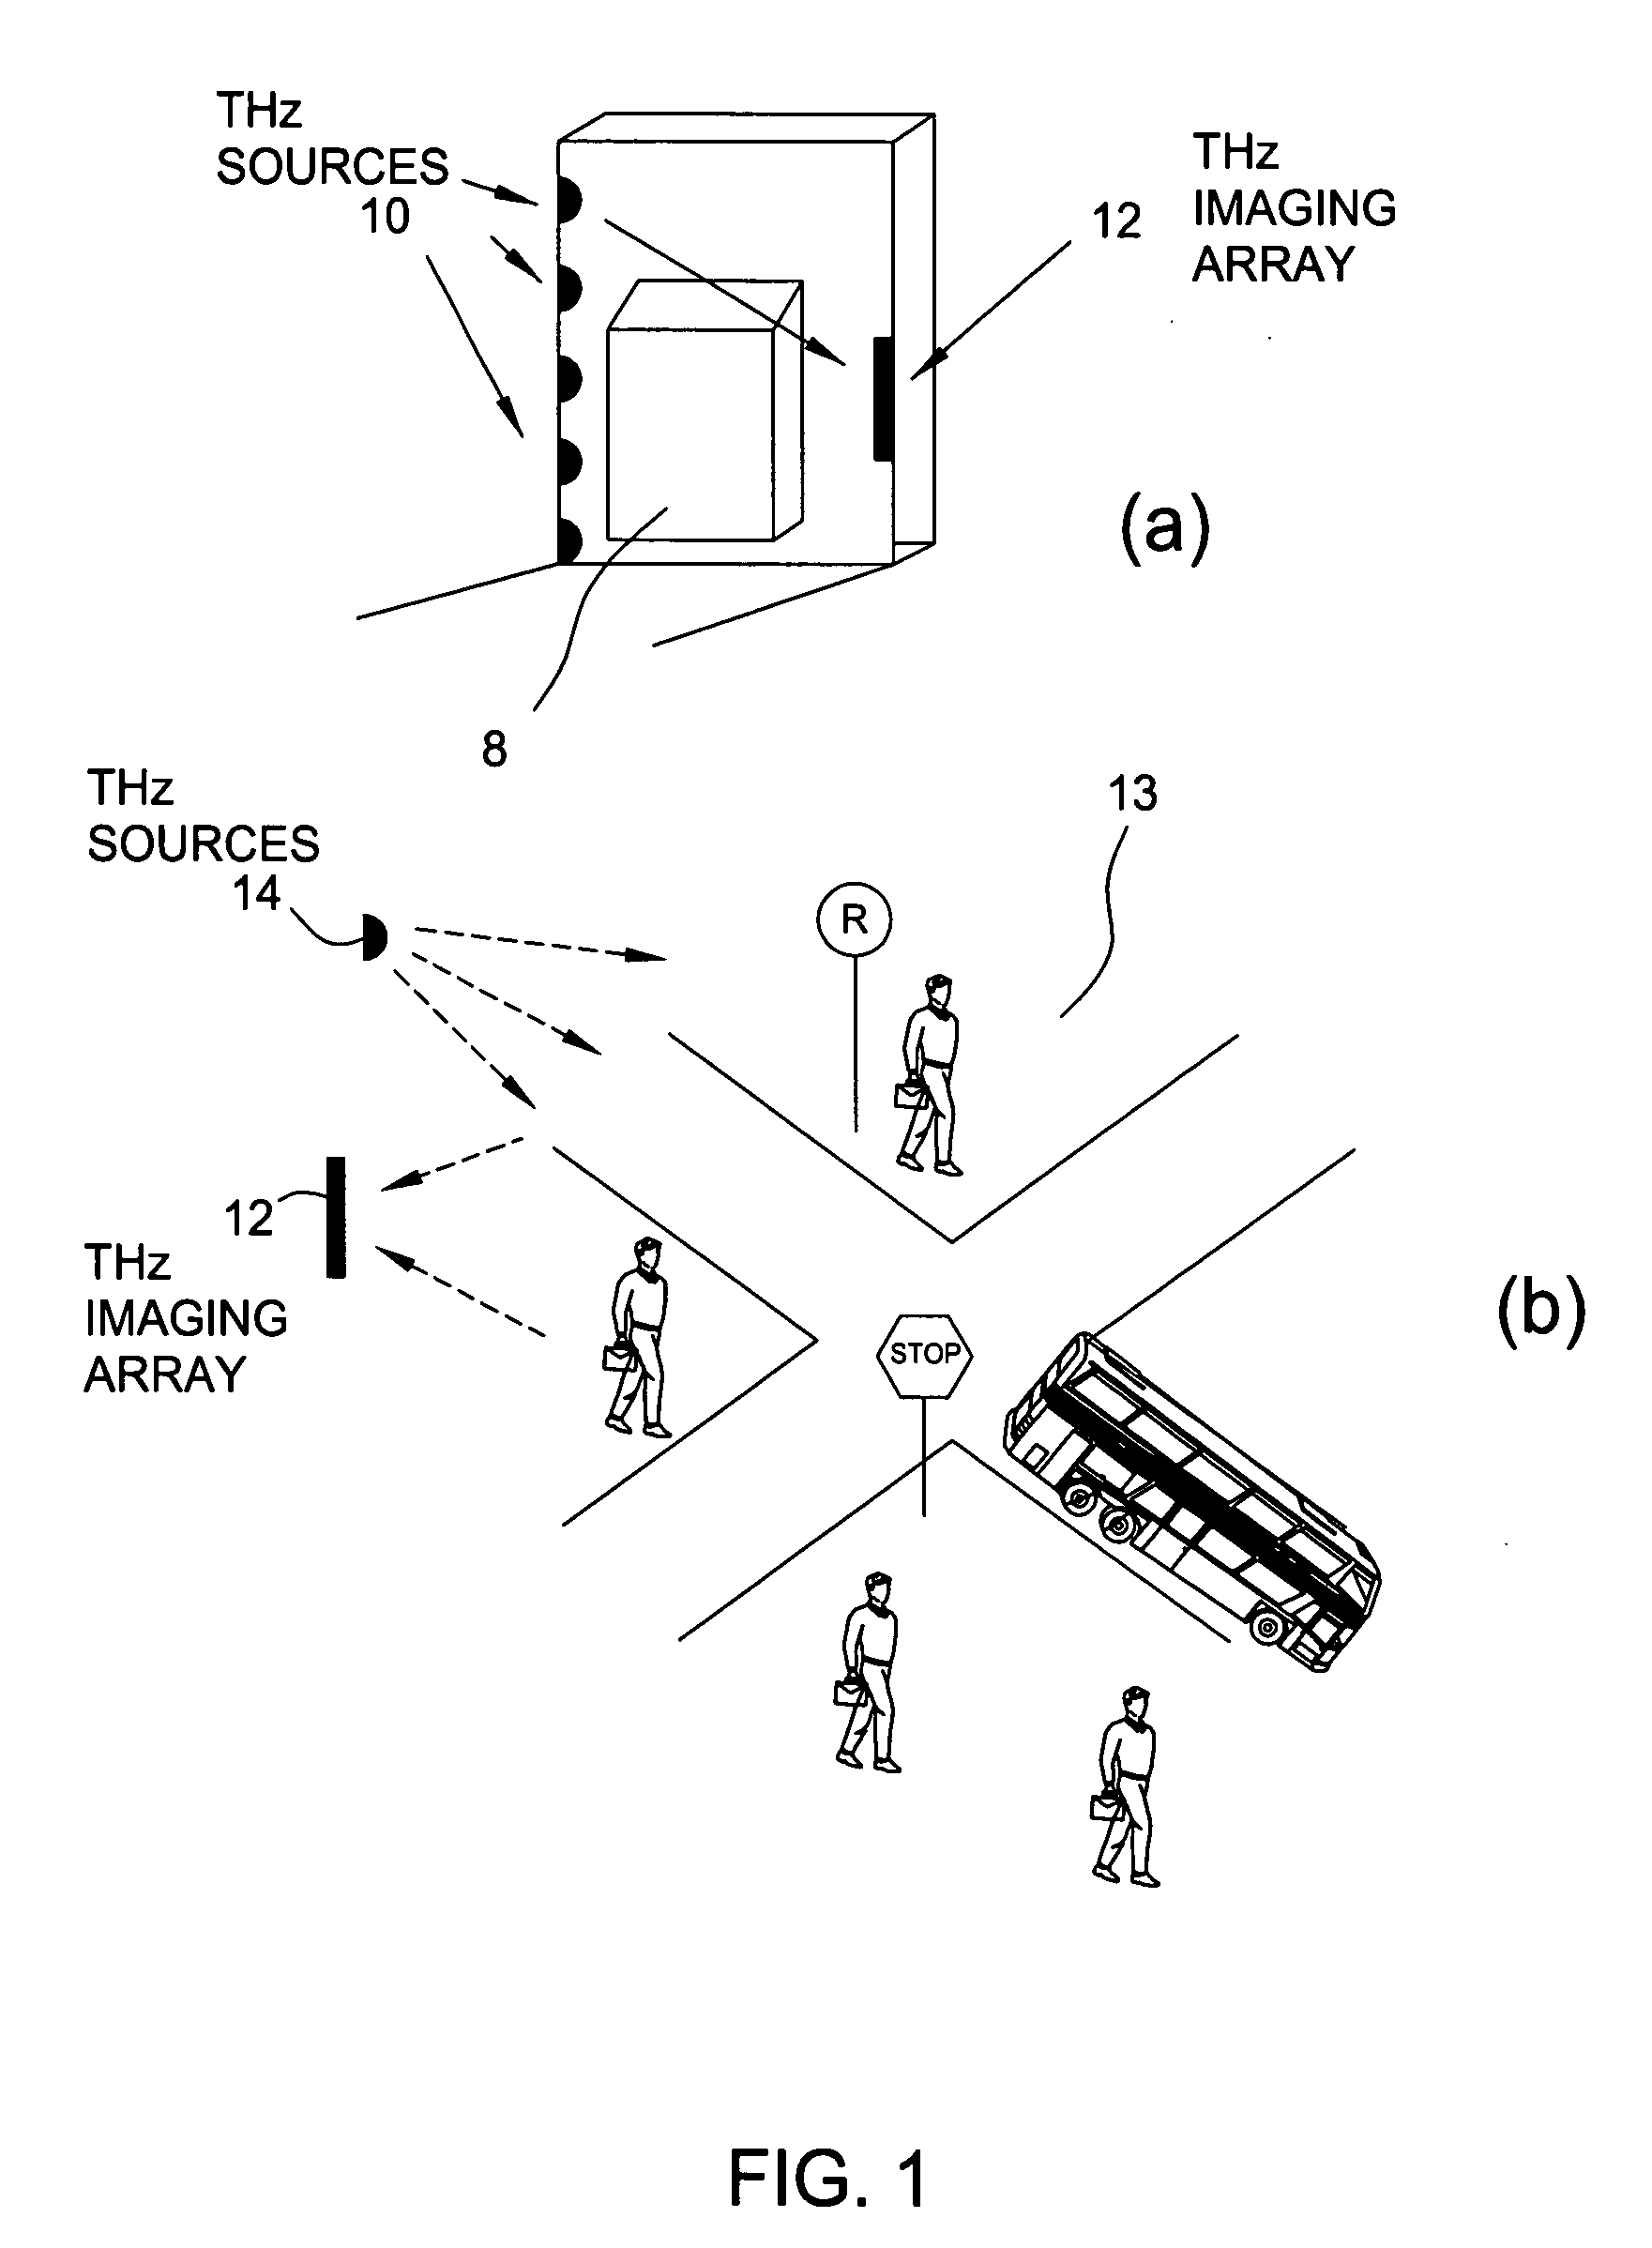 Terahertz imaging for near field objects